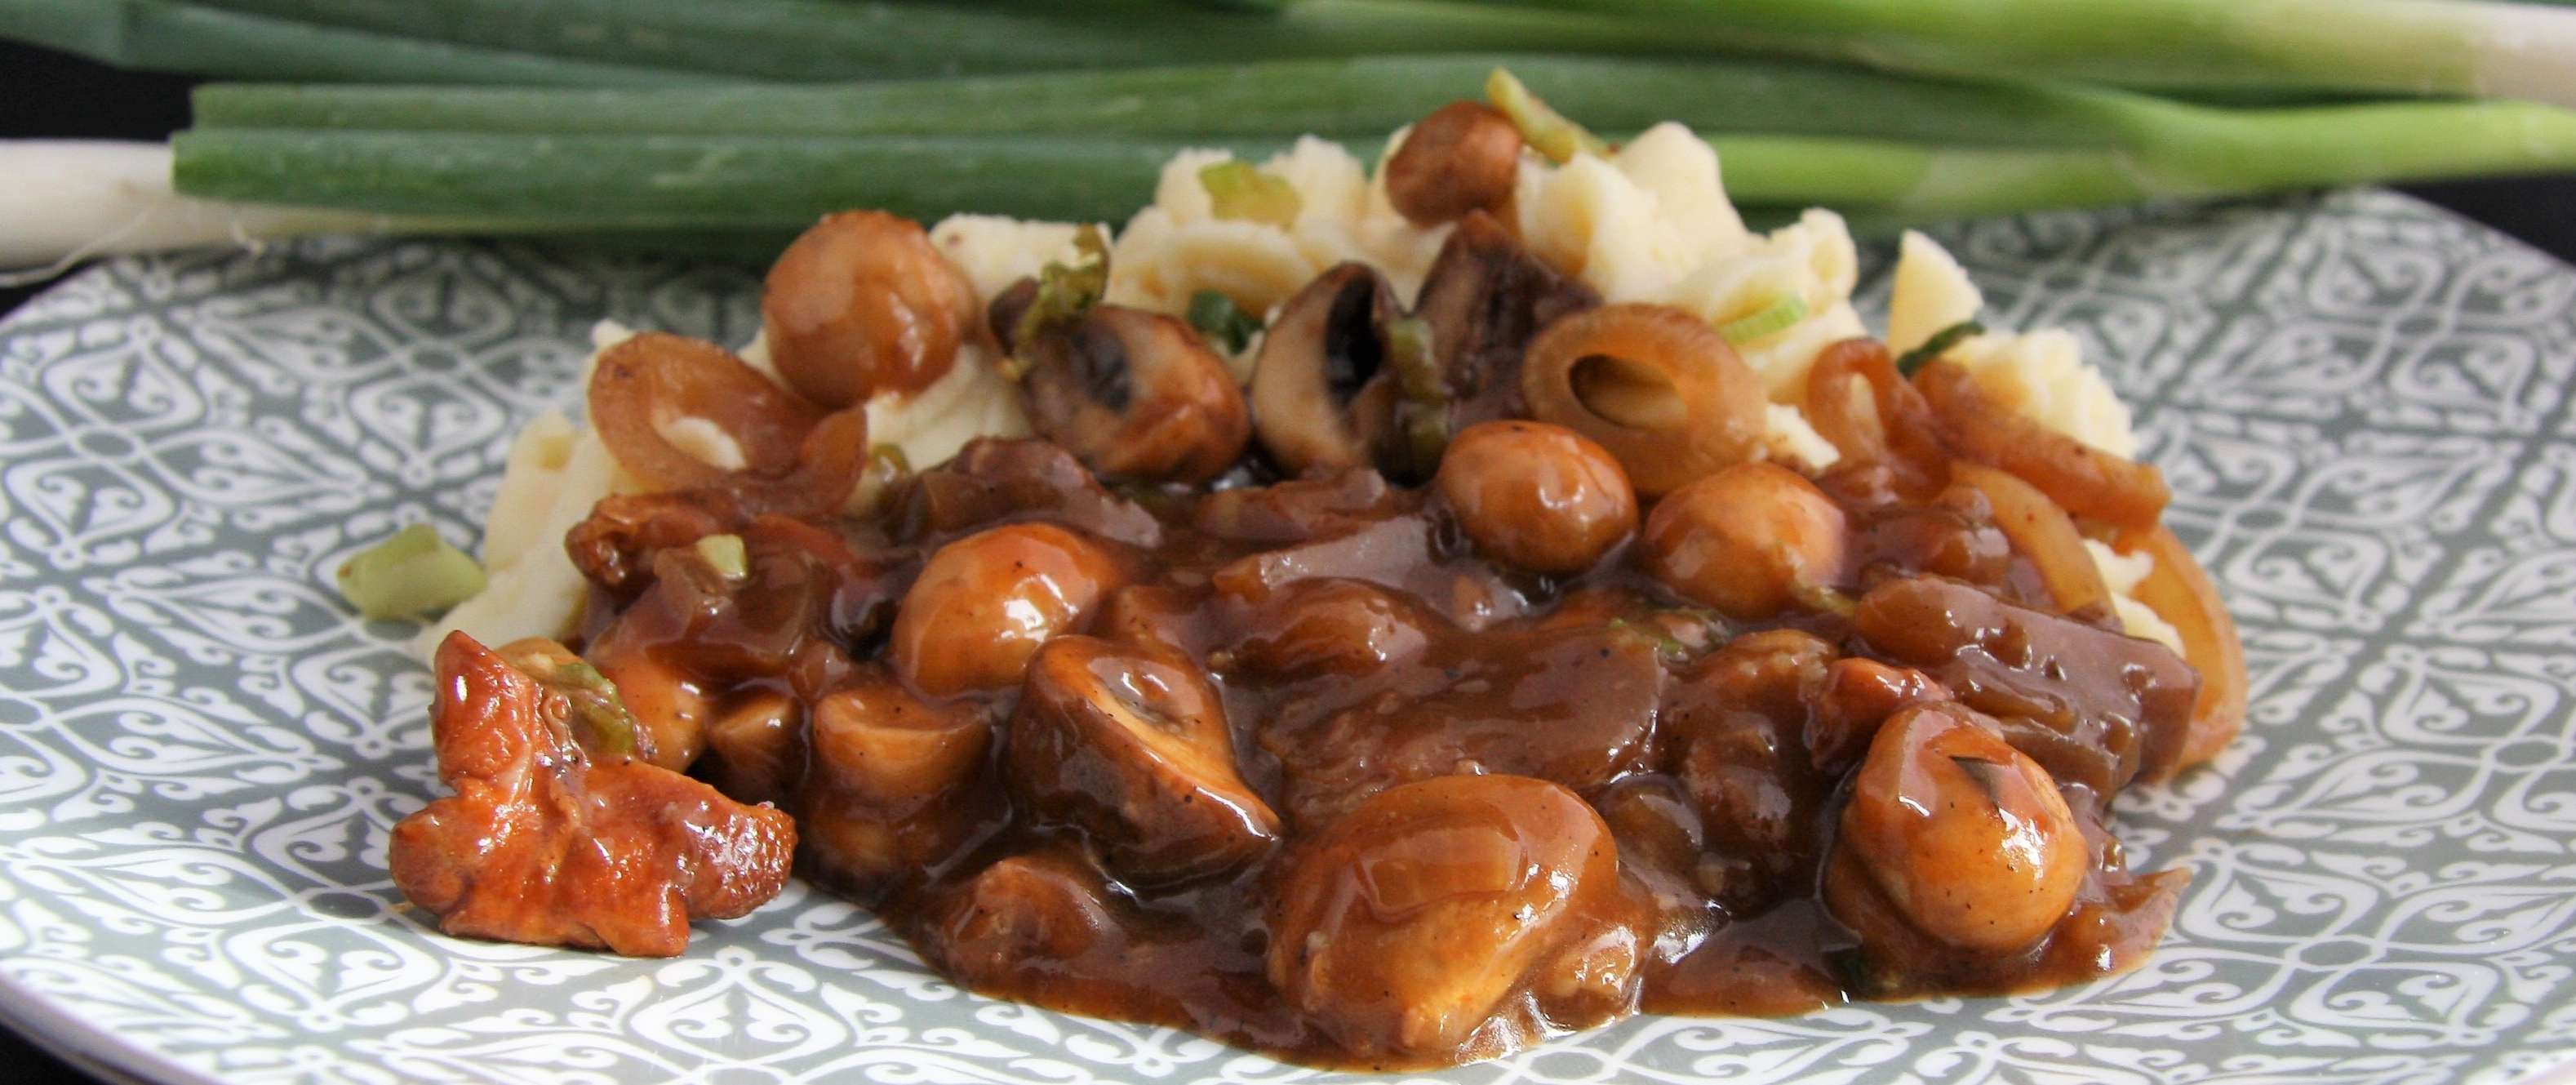 Recept: hacheesaus uit oma's tijd met paddenstoelen